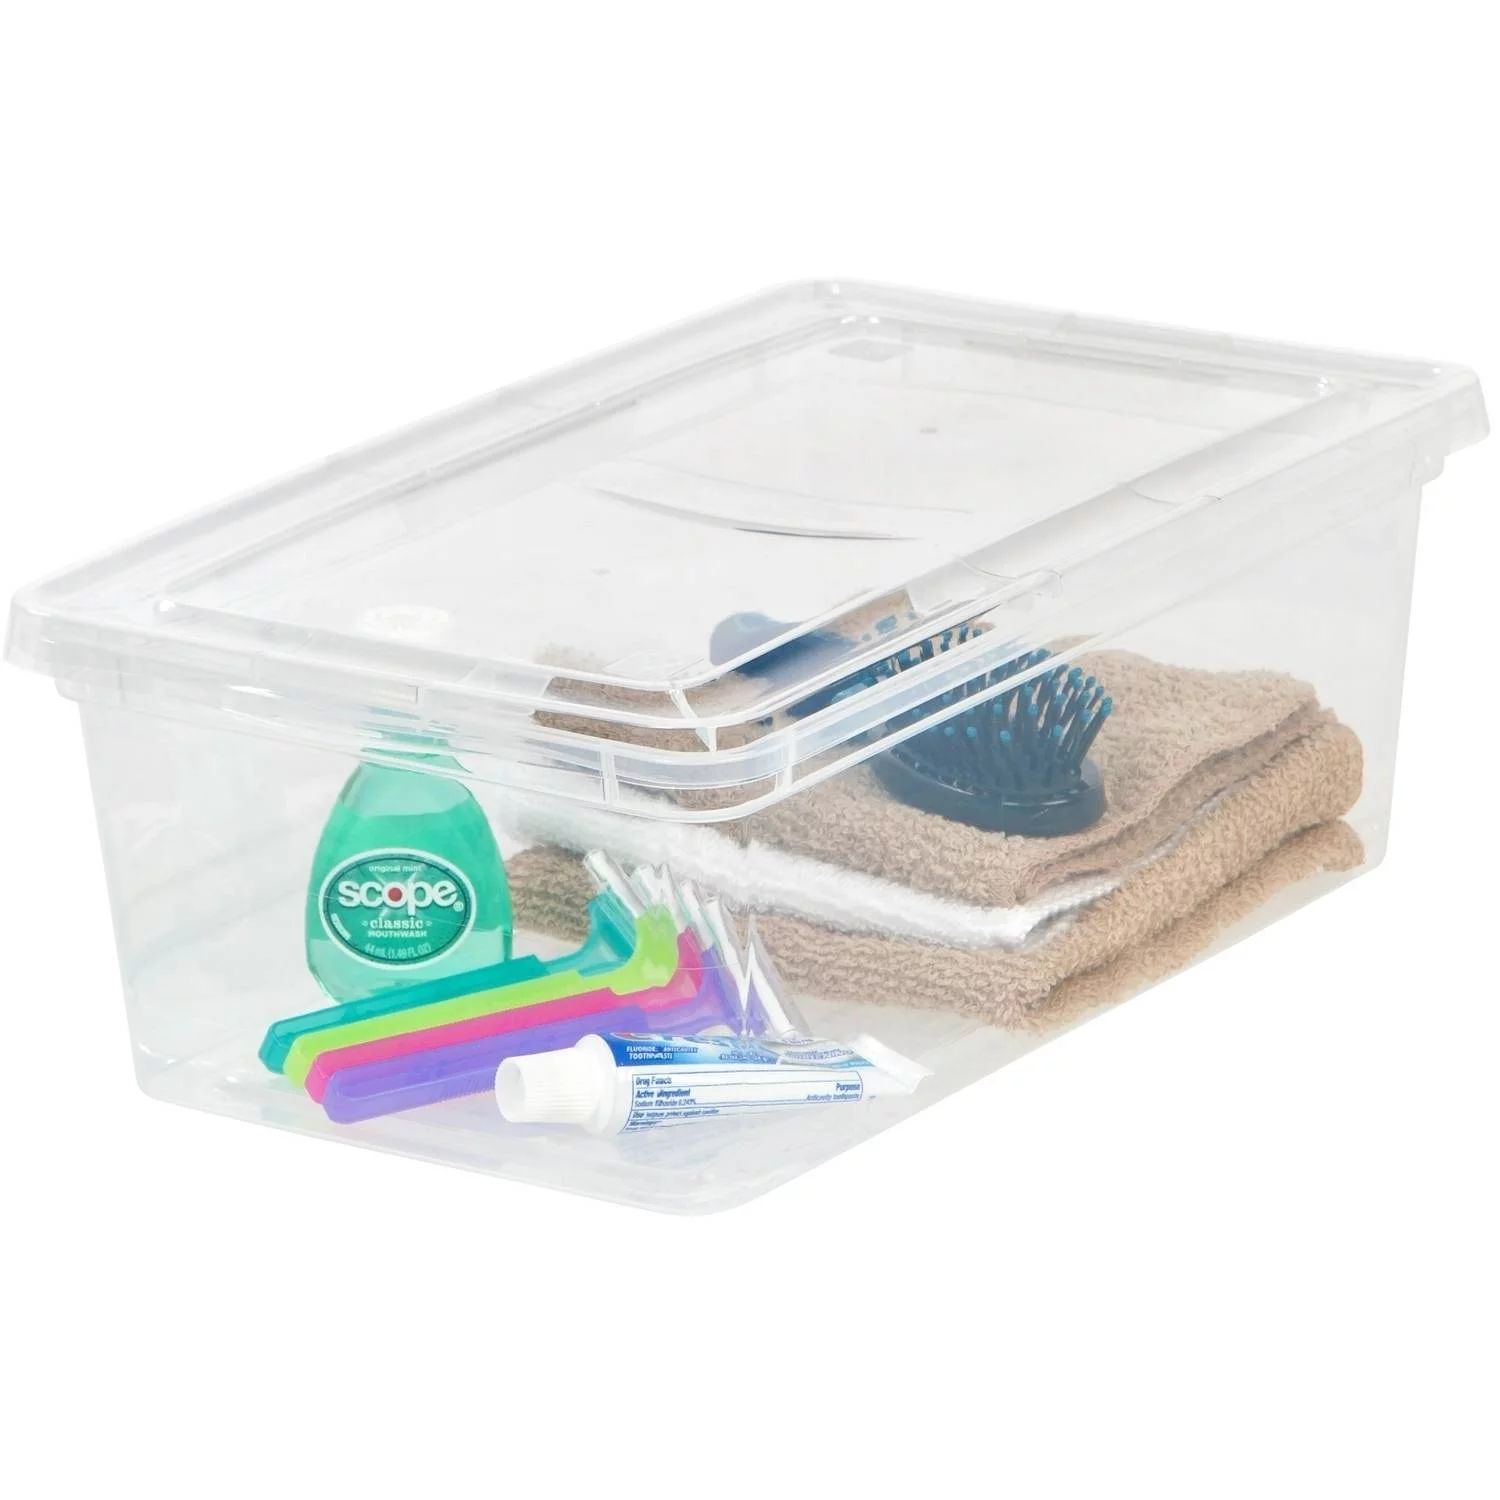 IRIS USA 6 QT Plastic Storage Box, Clear, 1 Pack - Walmart.com | Walmart (US)